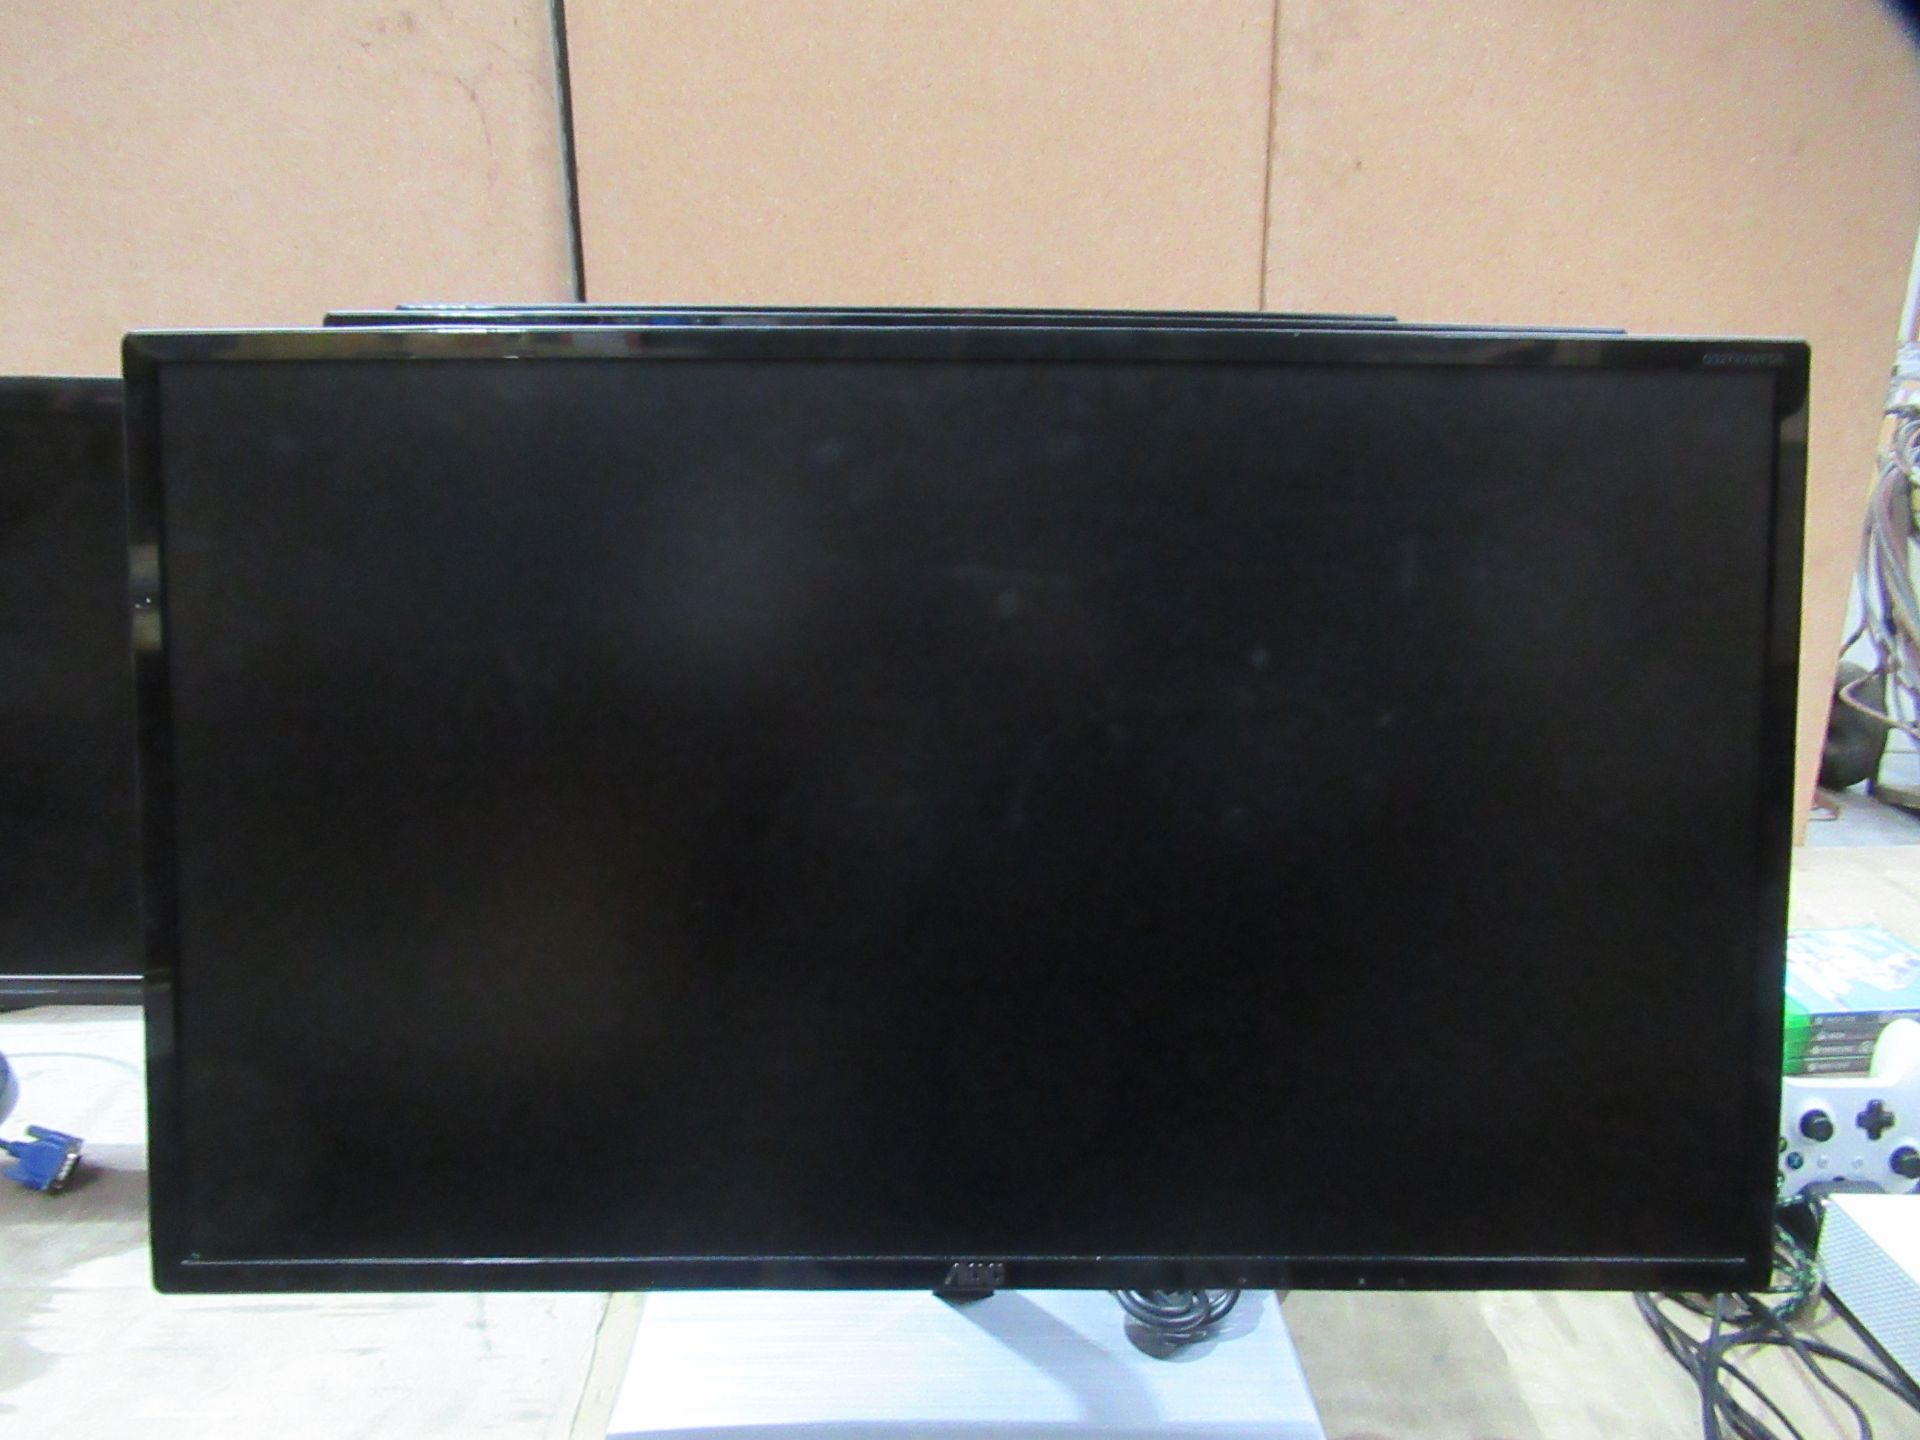 3x AOC LCD Monitors (LED Backlight) - Image 3 of 7